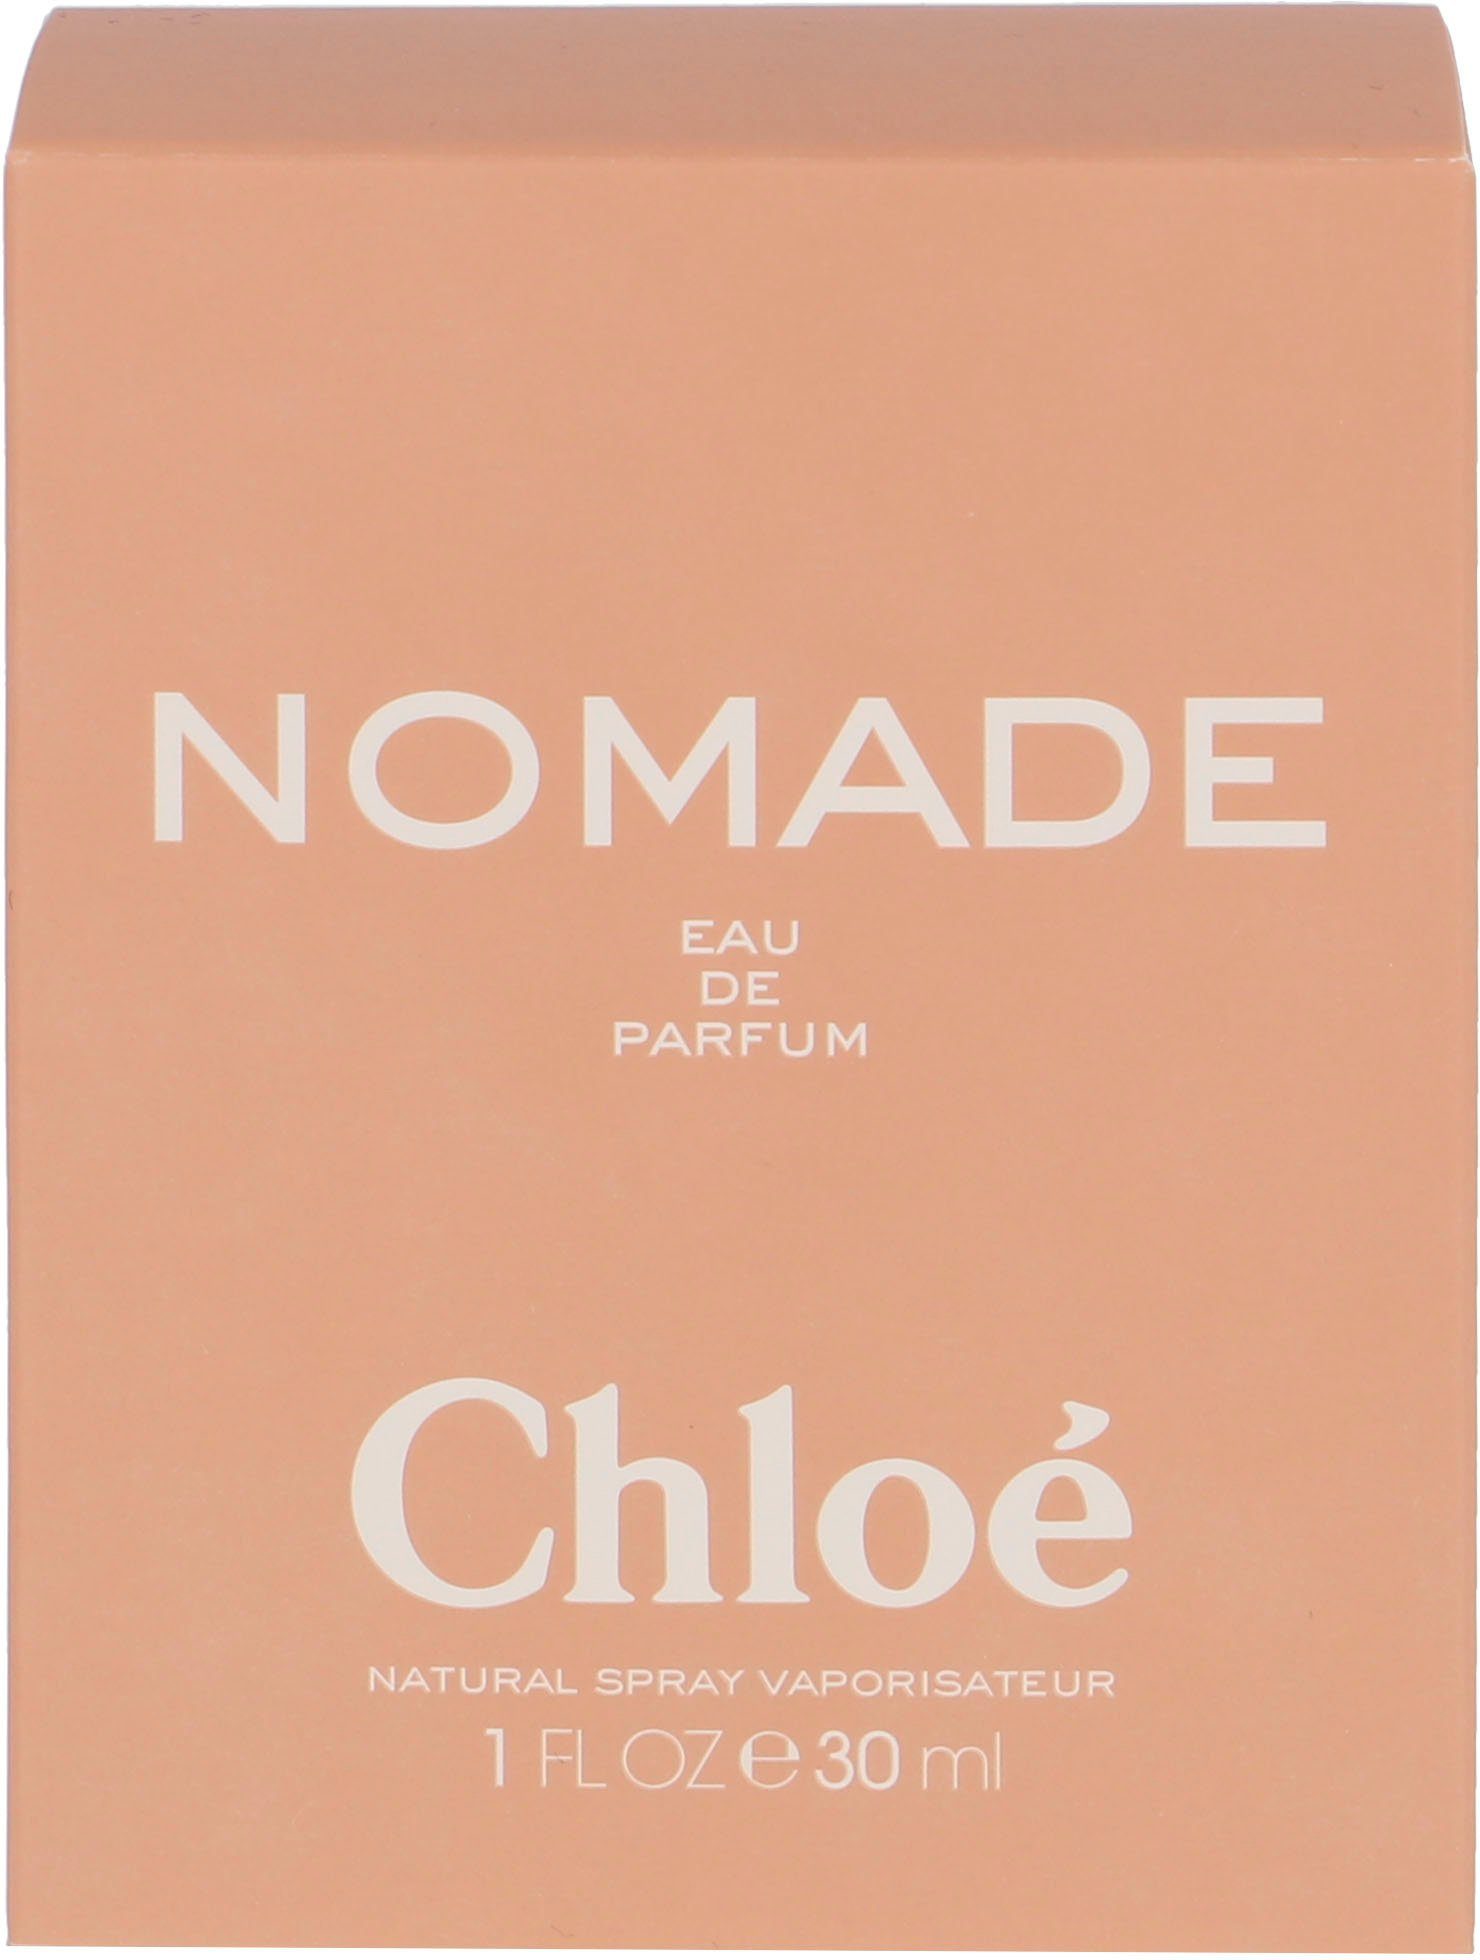 Nomade Eau Chloé de Parfum